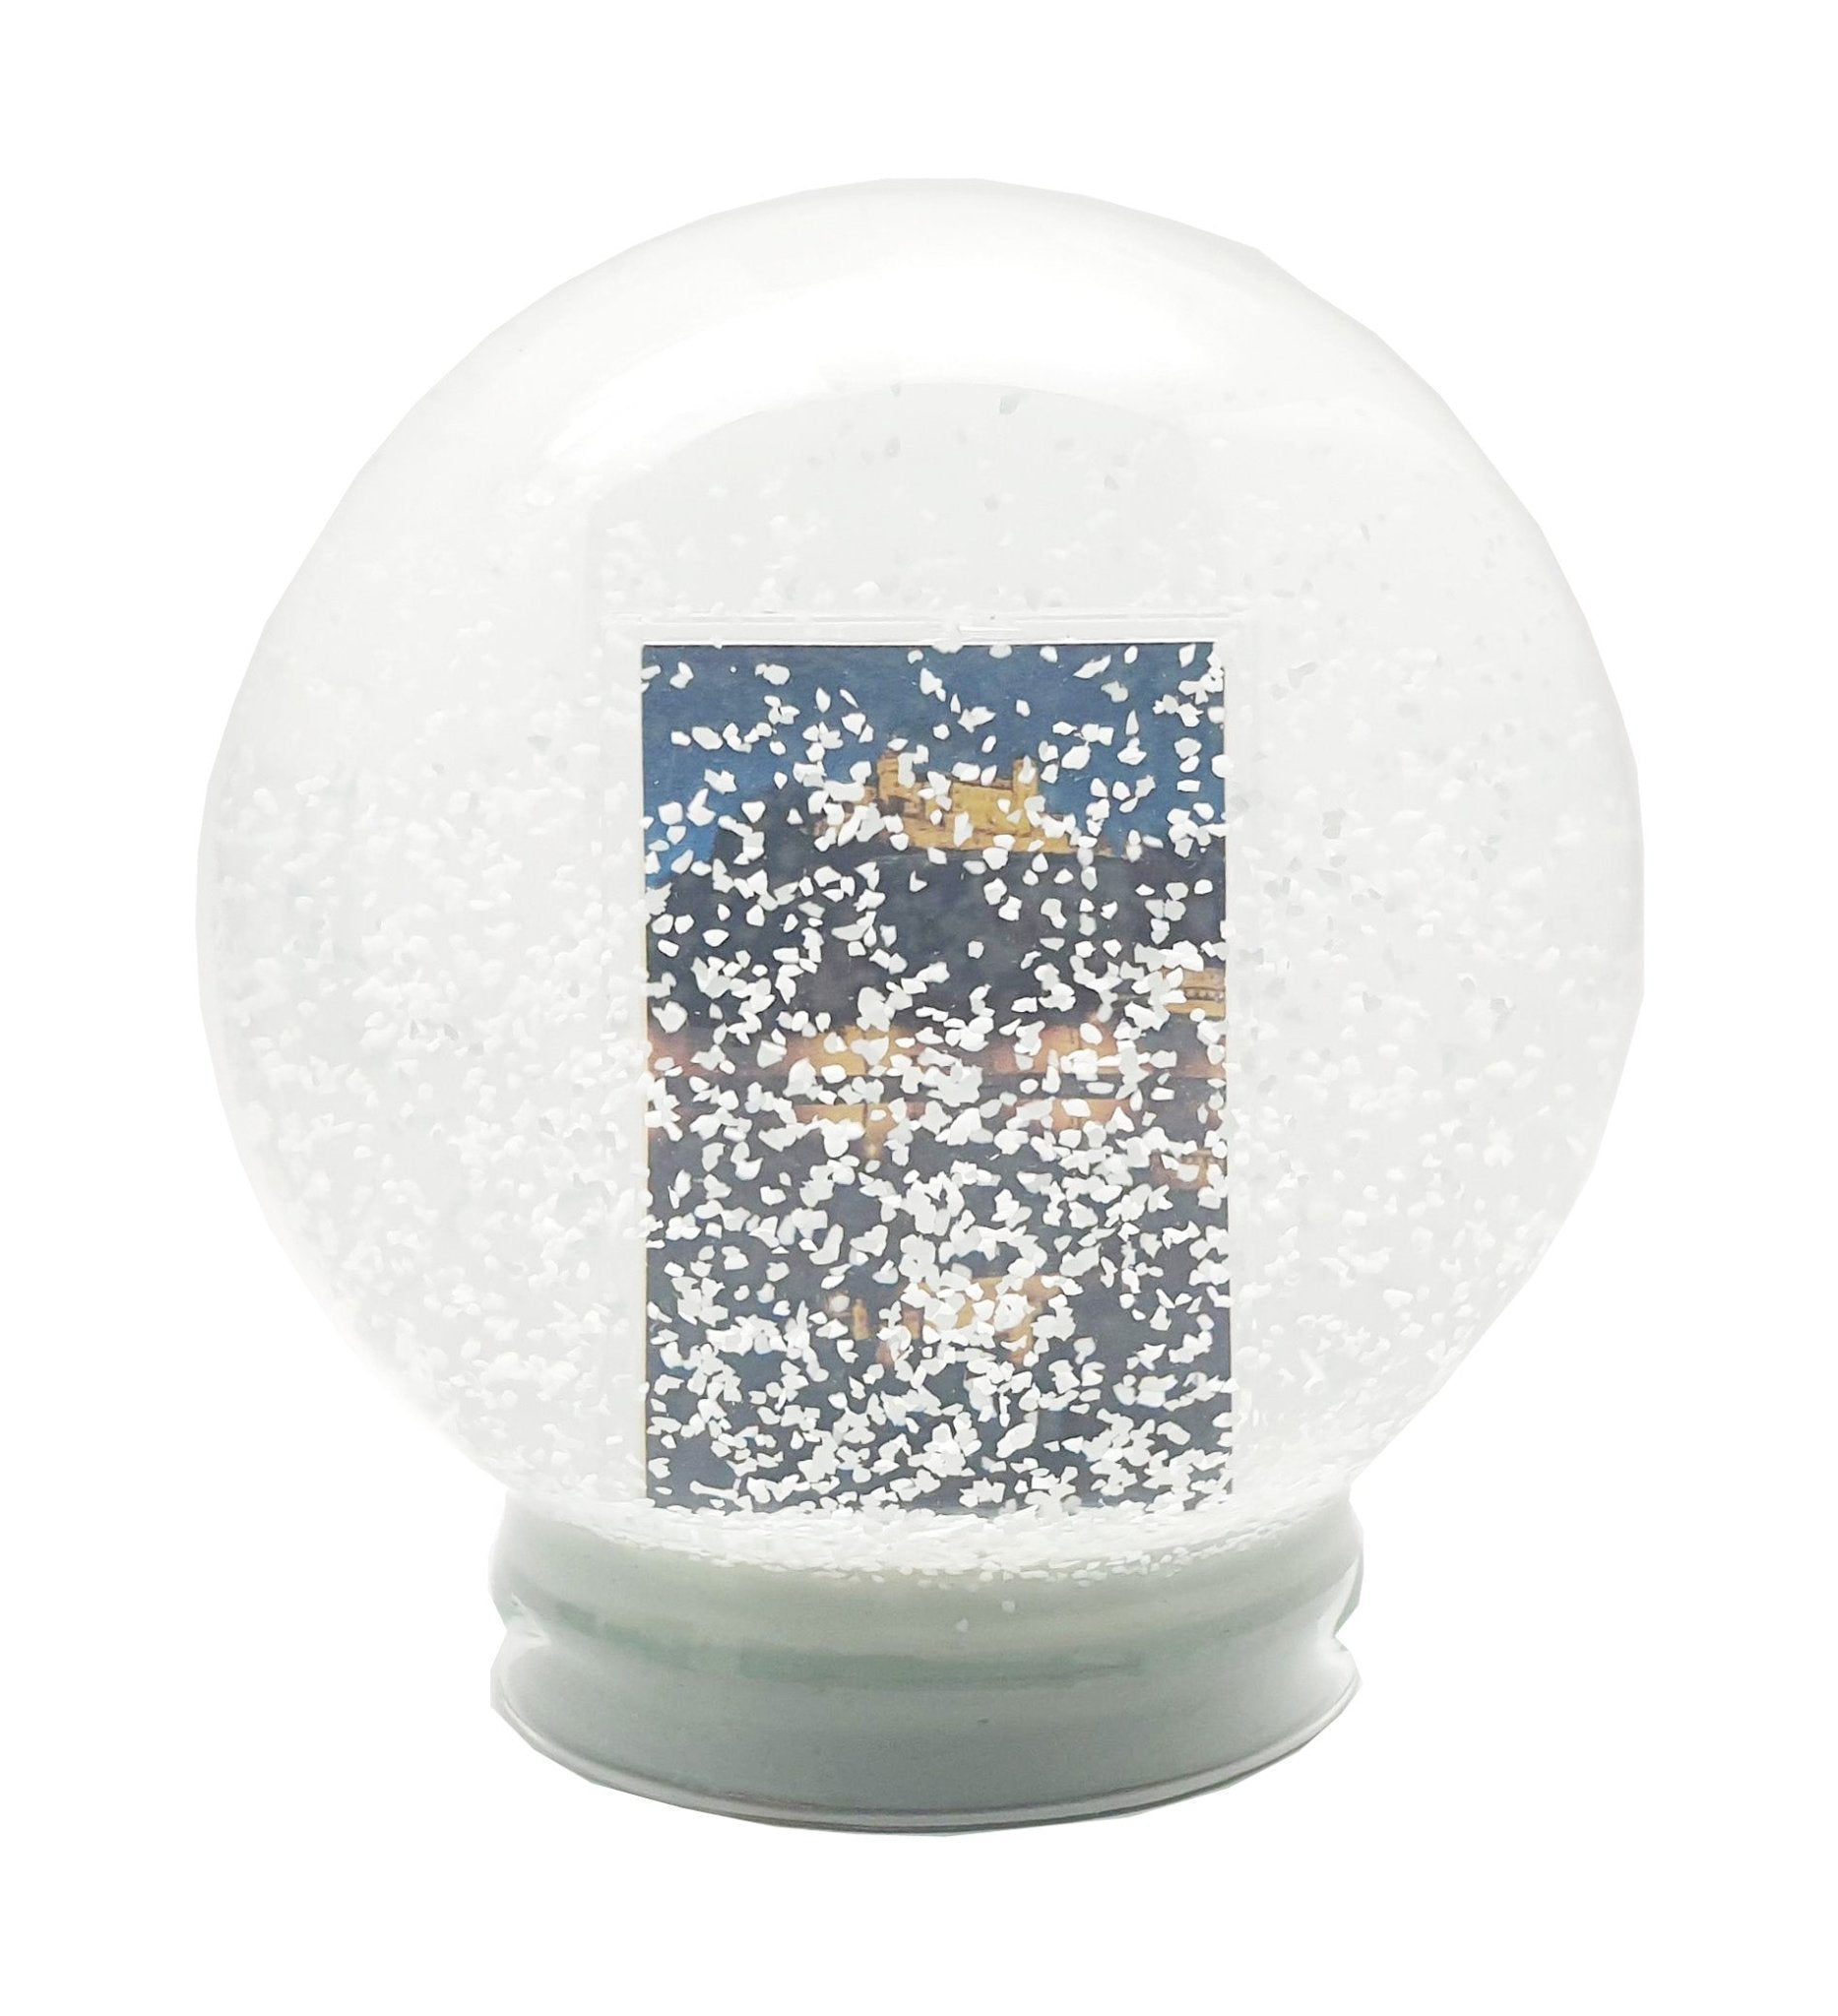 100mm Glas mit Fotoeinsatz für eine Foto-Schneekugel - Schneekugelhaus